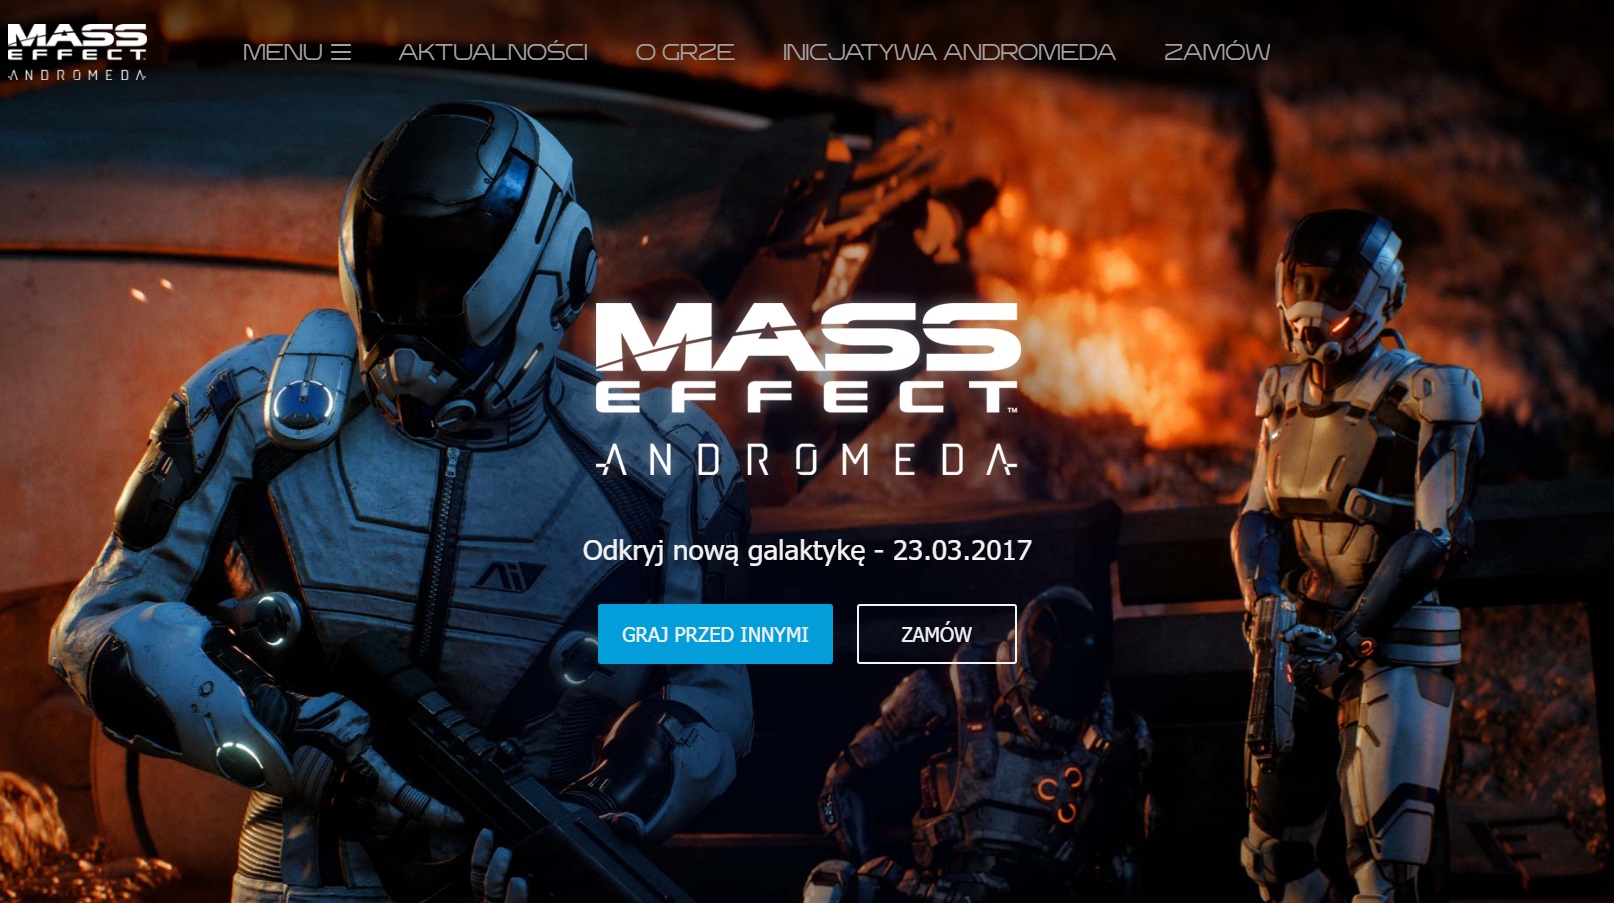 Mass Effect Andromeda za darmo pełna wersja gry do pobrania